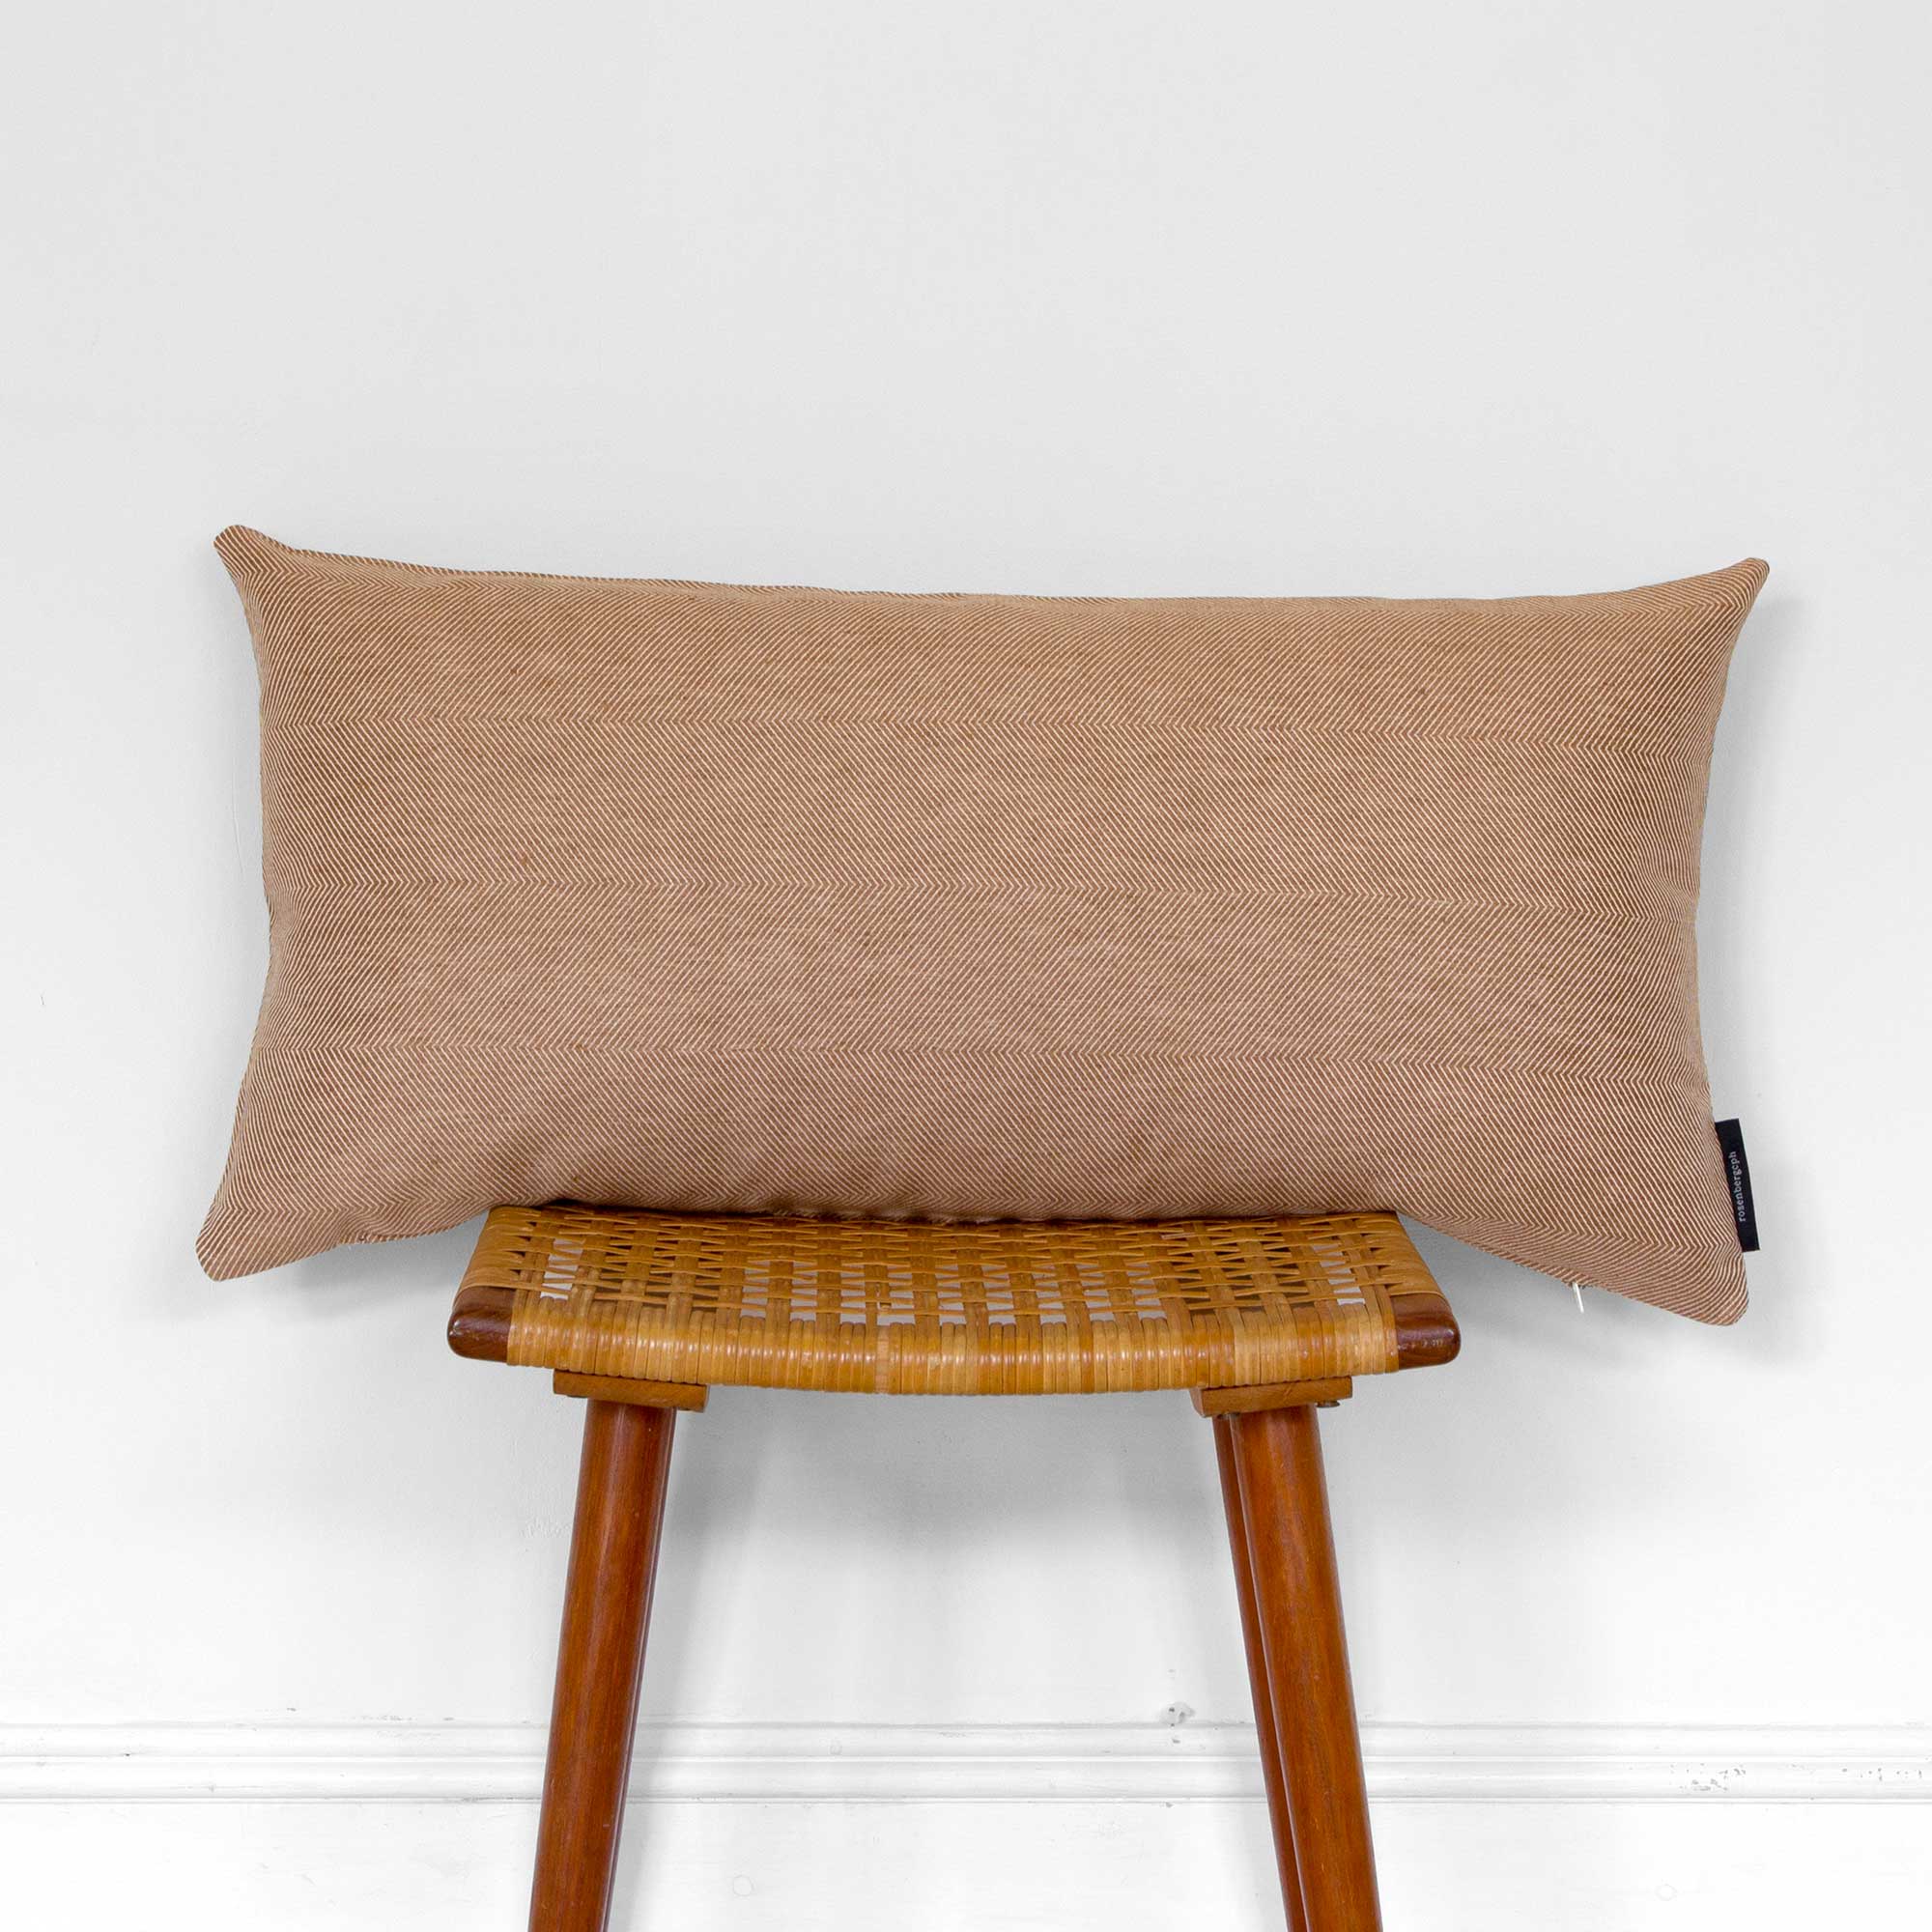 Rectangular cushion linen/cotton Almond, design by Anne Rosenberg, RosenbergCph